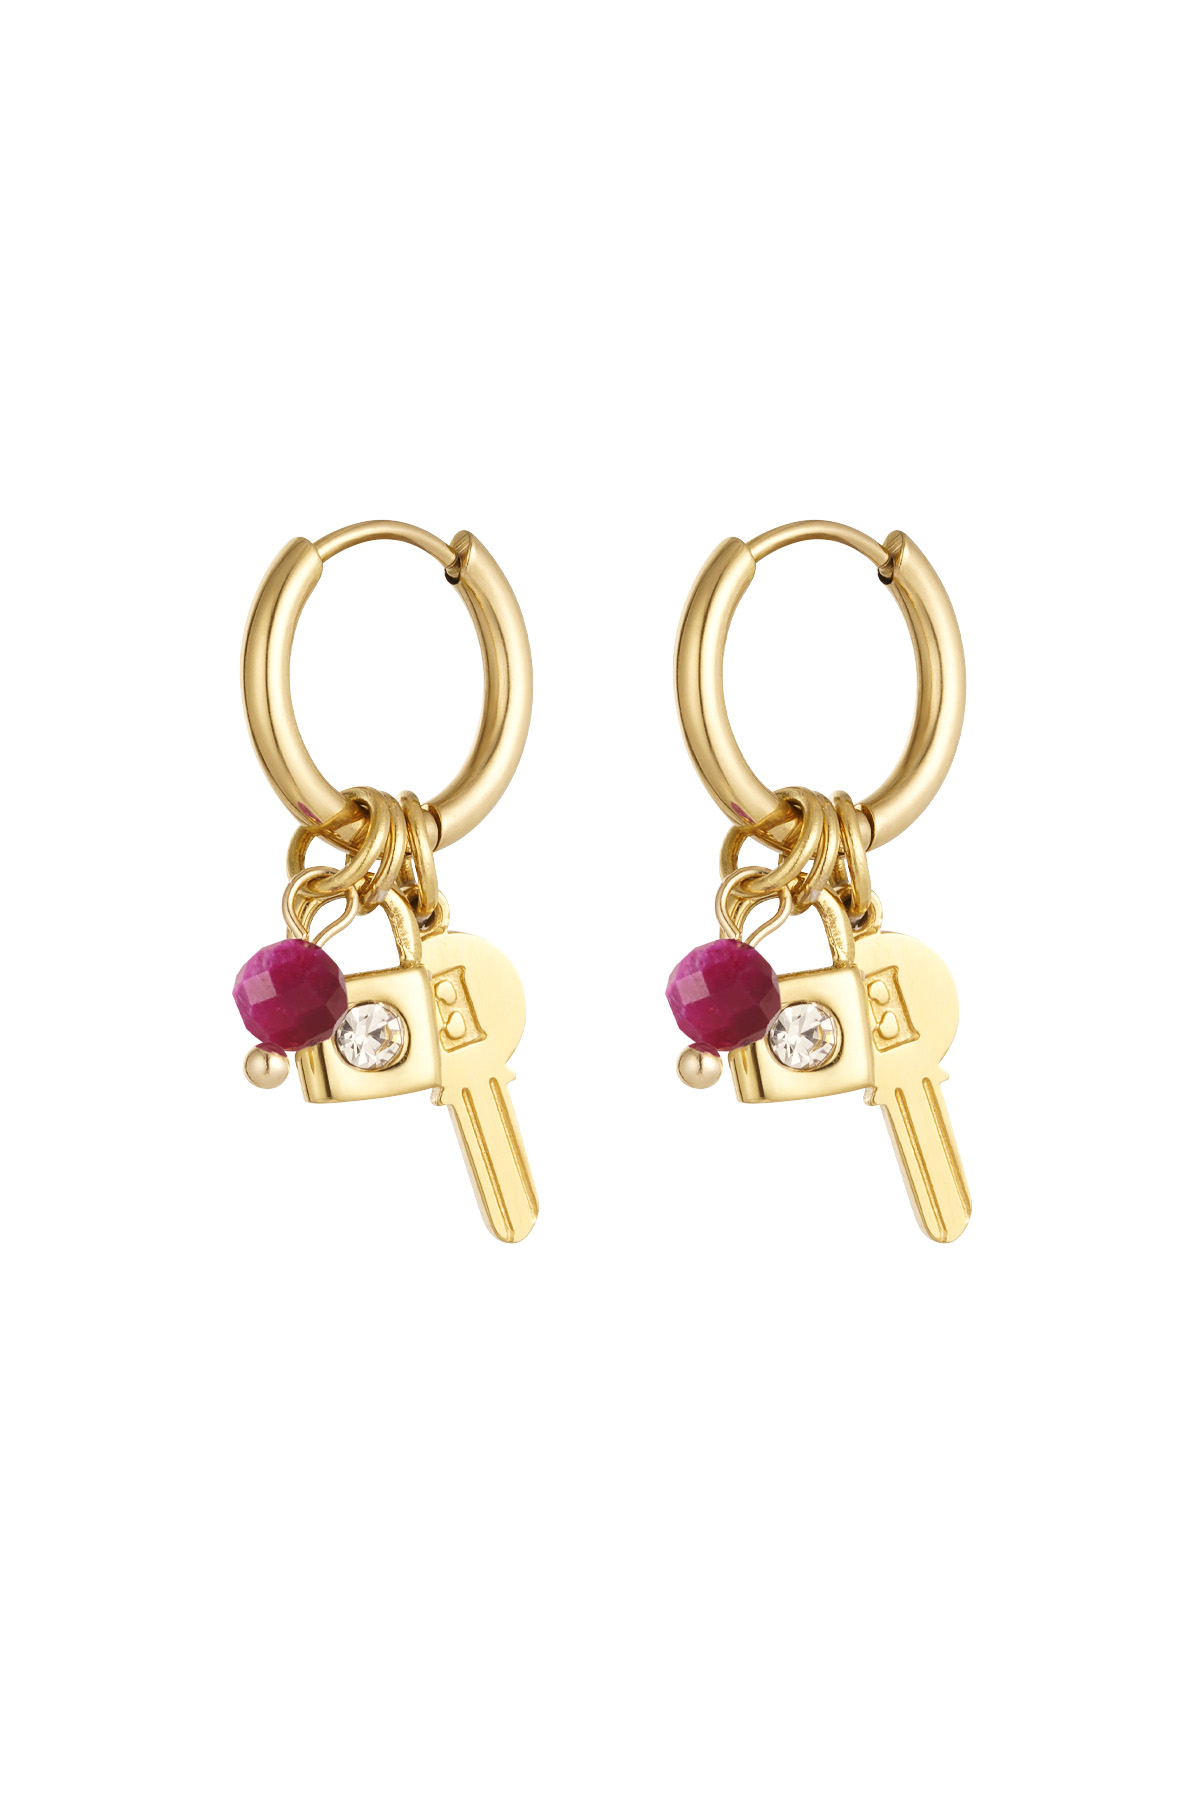 Oorbellen sleutel met kraaltjes - goud/roze